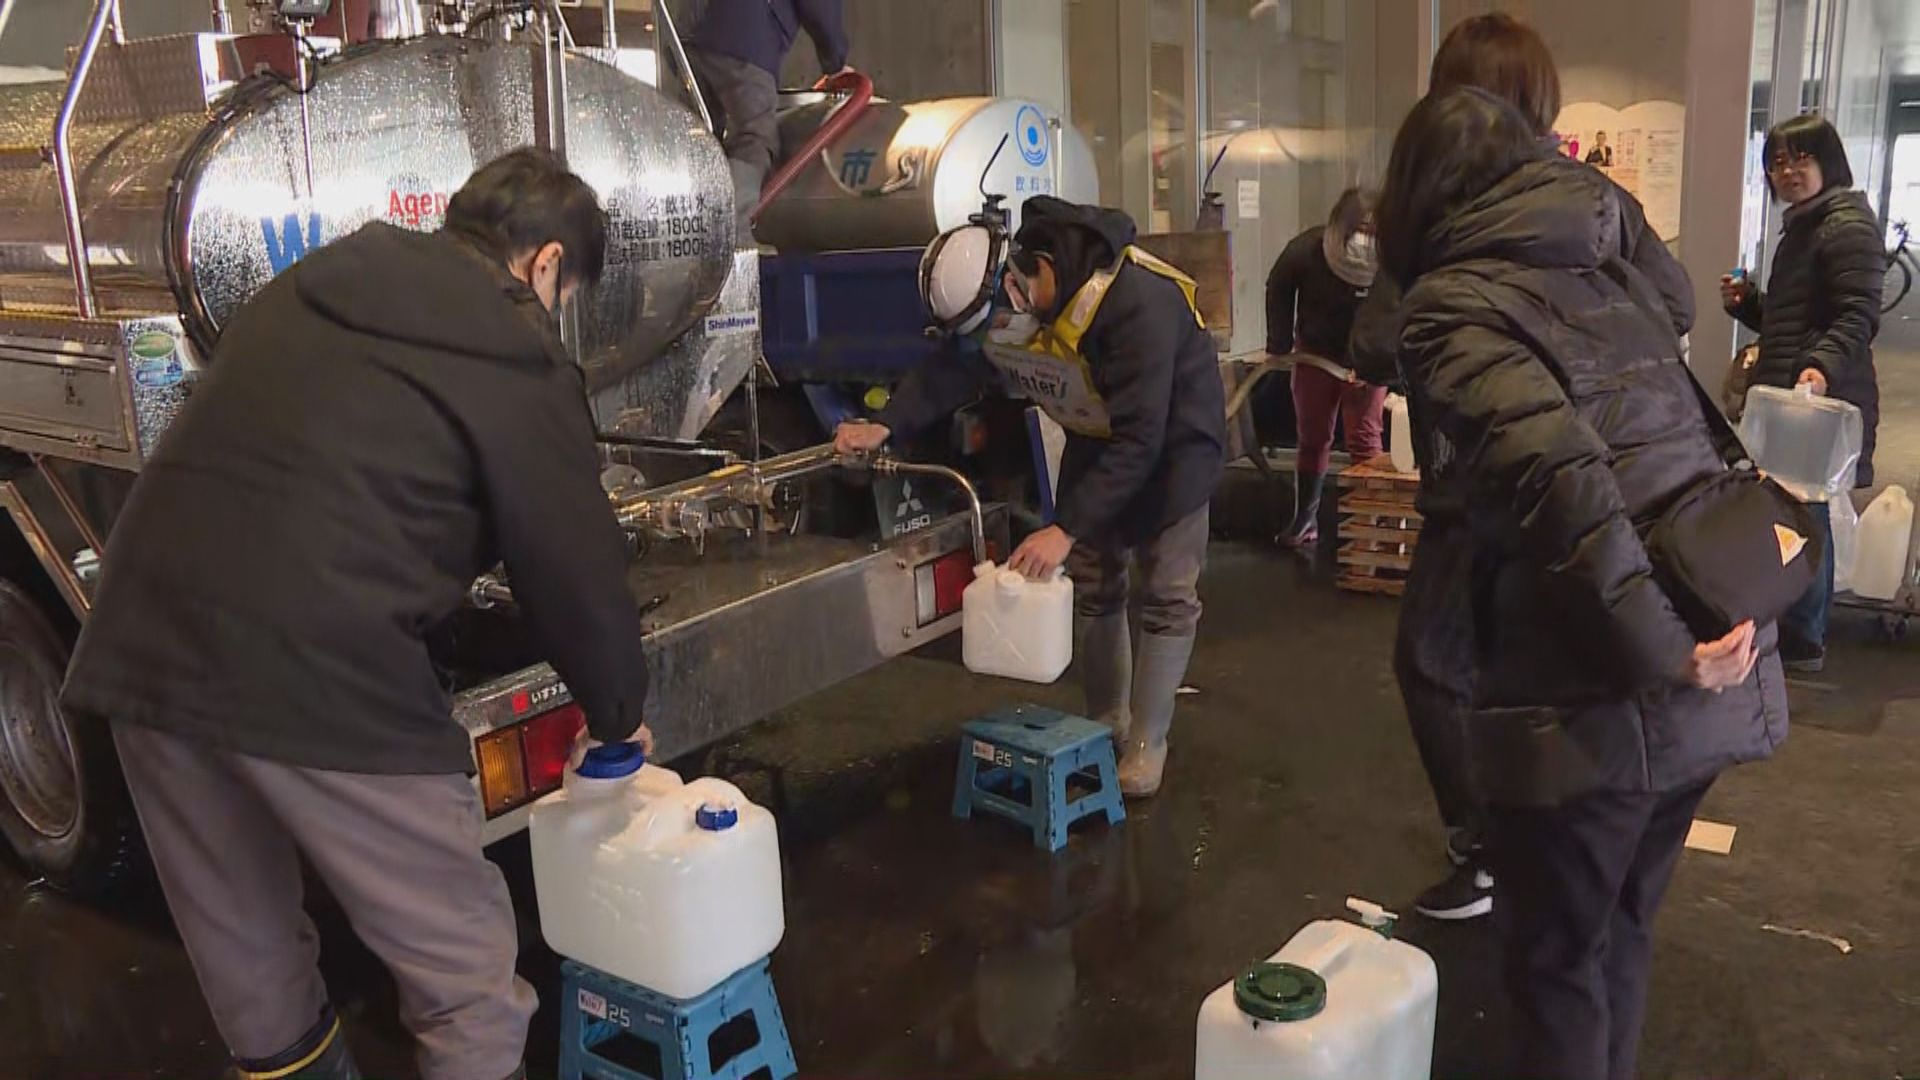 【災區直擊】富山縣冰見市斷食水 居民靠朋友運物資補給